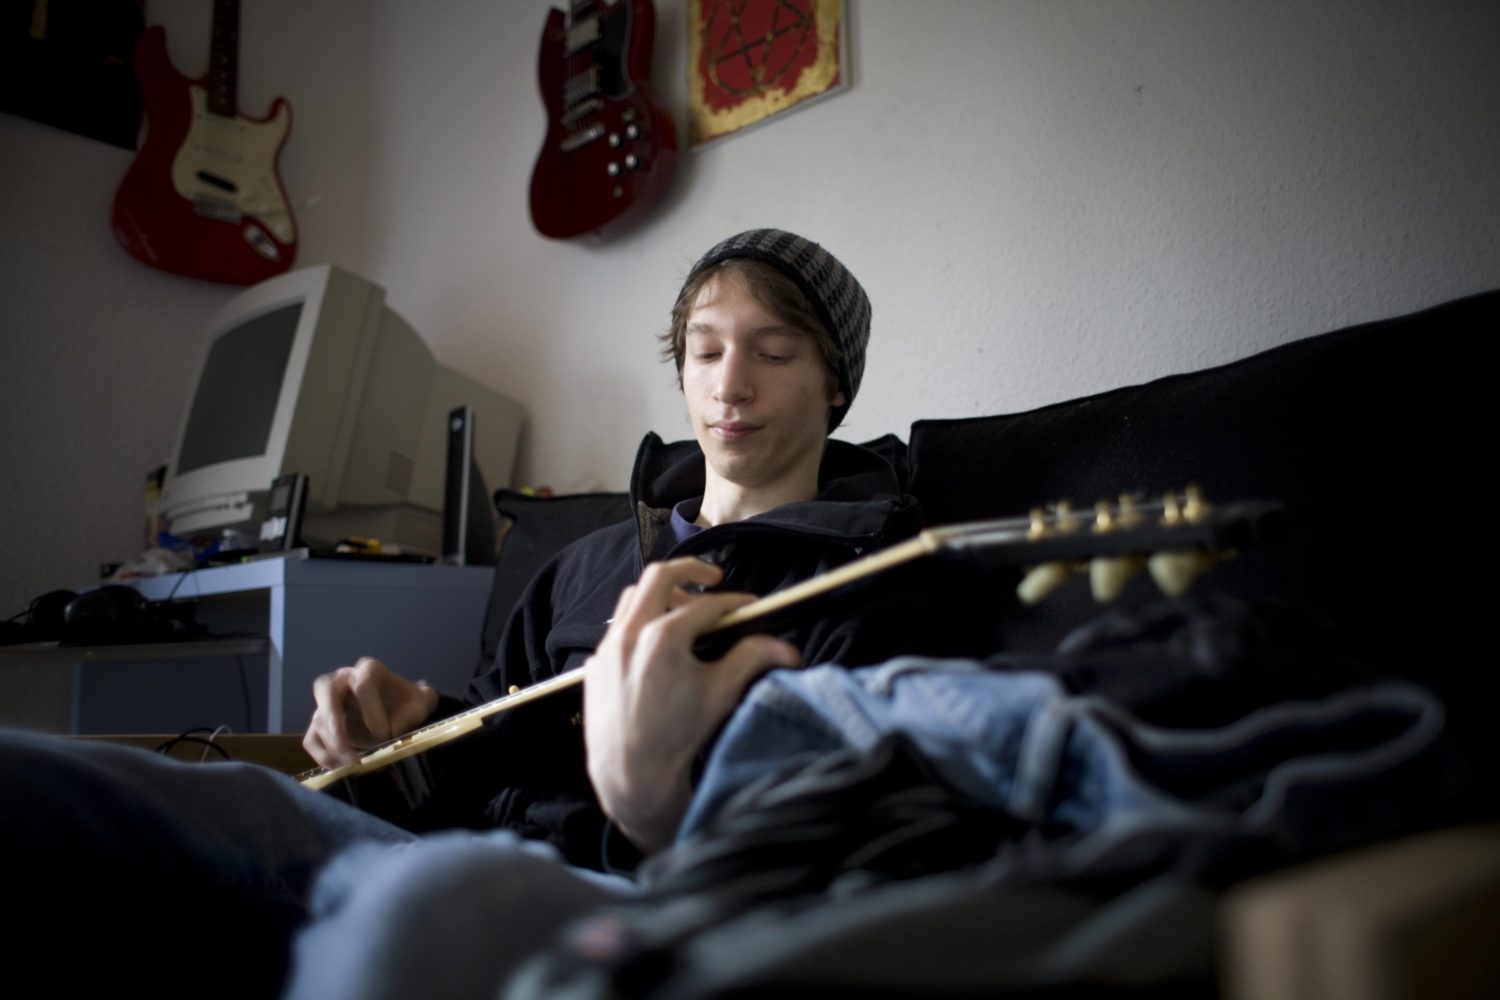 Alternative Lebensformen Berlin: Untermiete statt Miete. Ein junger Mann spielt in seinem Zimmer Gitarre. Foto: Imago/Photothek/Ute Grabowsky